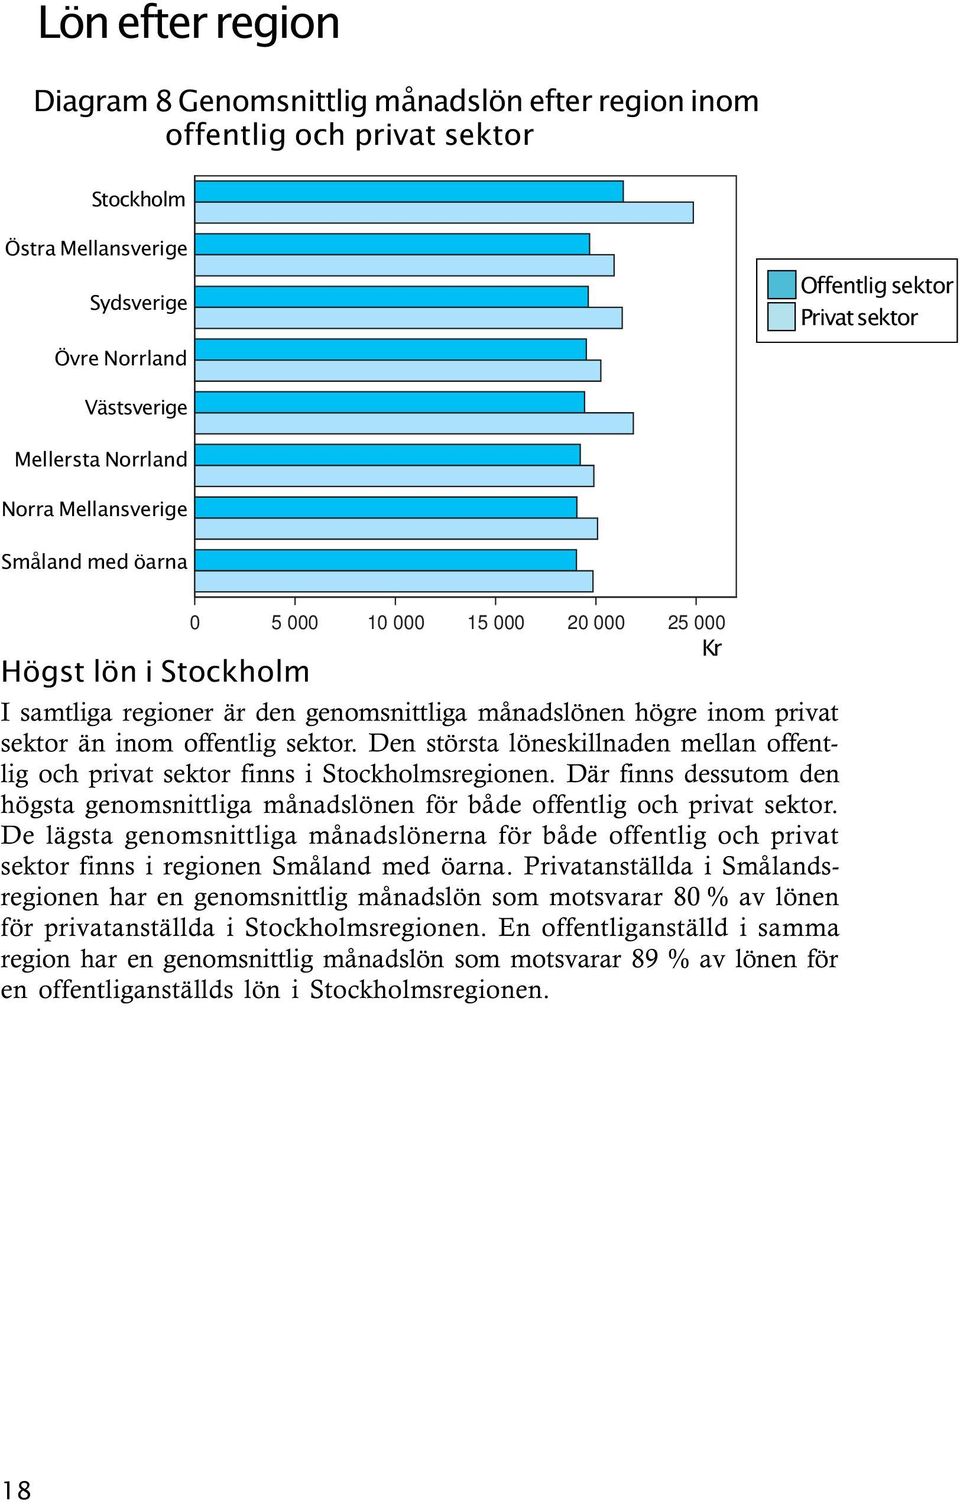 inom offentlig sektor. Den största löneskillnaden mellan offentlig och privat sektor finns i Stockholmsregionen.